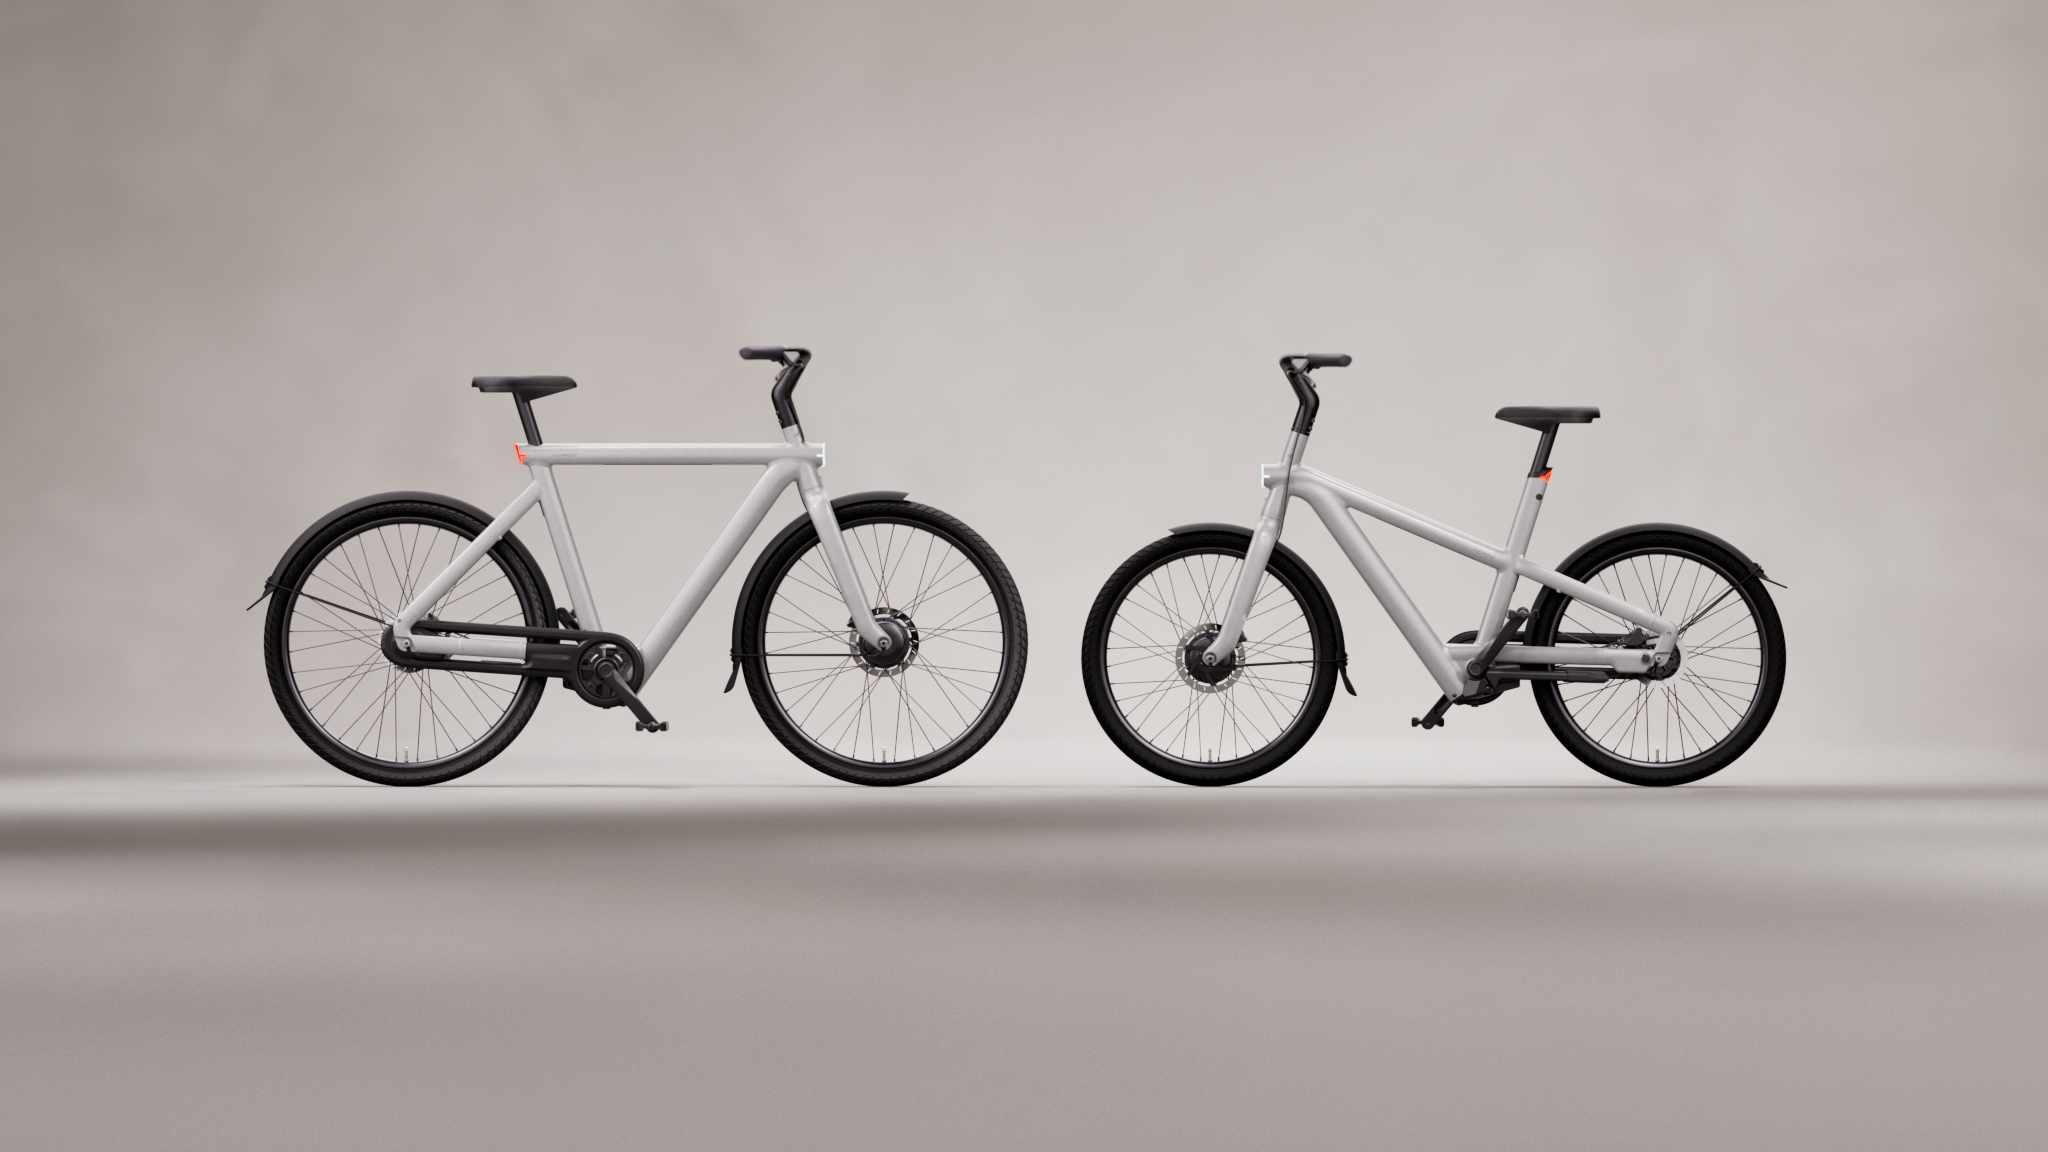 自転車を超えていく新しいノリモノ。VanMoof｢S5/A5｣発表 | ギズモード 